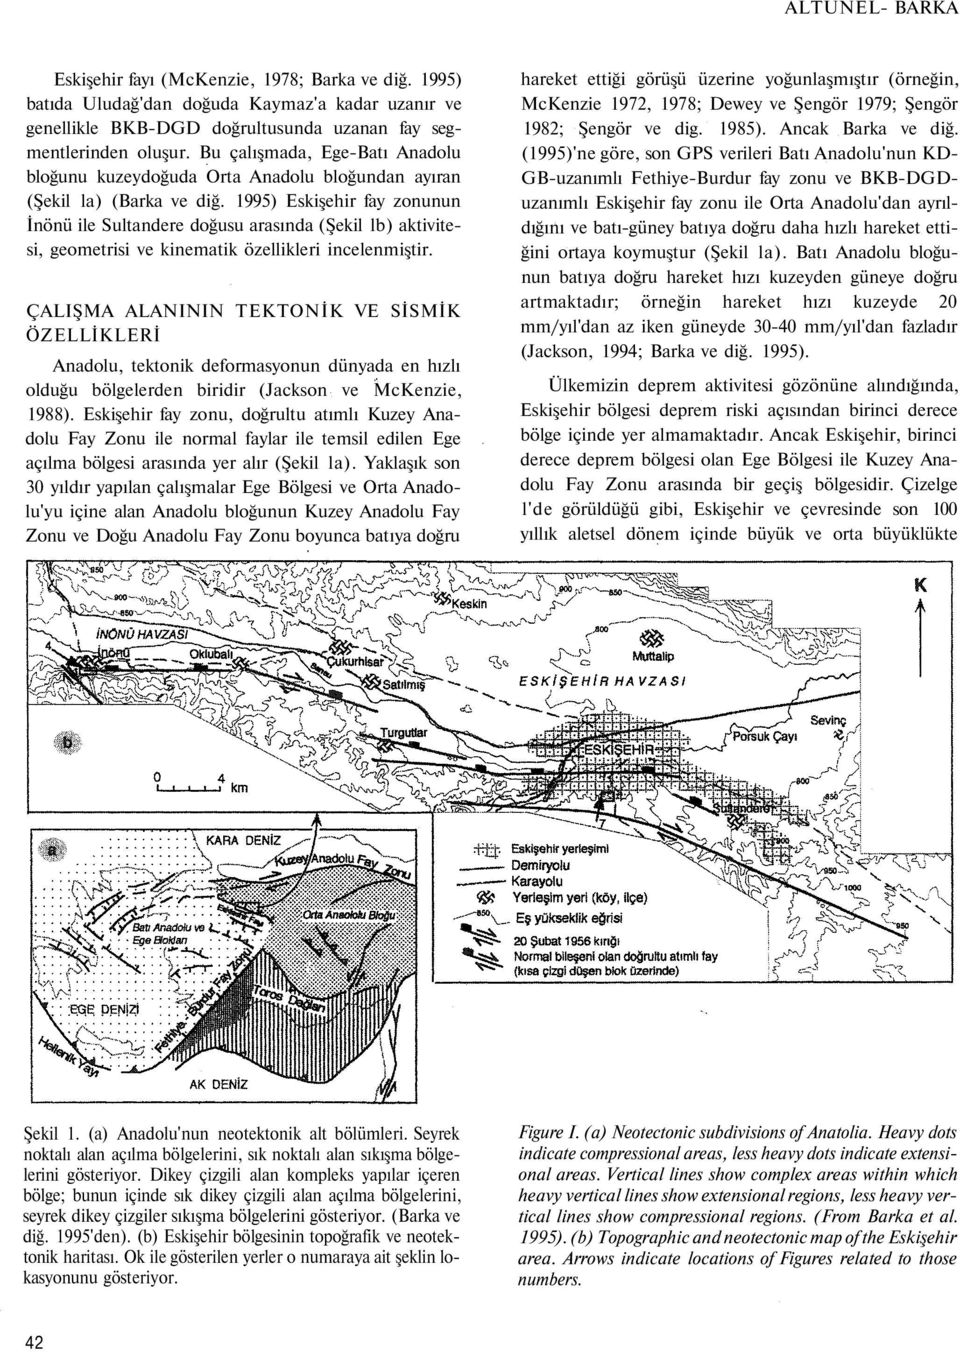 1995) Eskişehir fay zonunun İnönü ile Sultandere doğusu arasında (Şekil lb) aktivitesi, geometrisi ve kinematik özellikleri incelenmiştir.